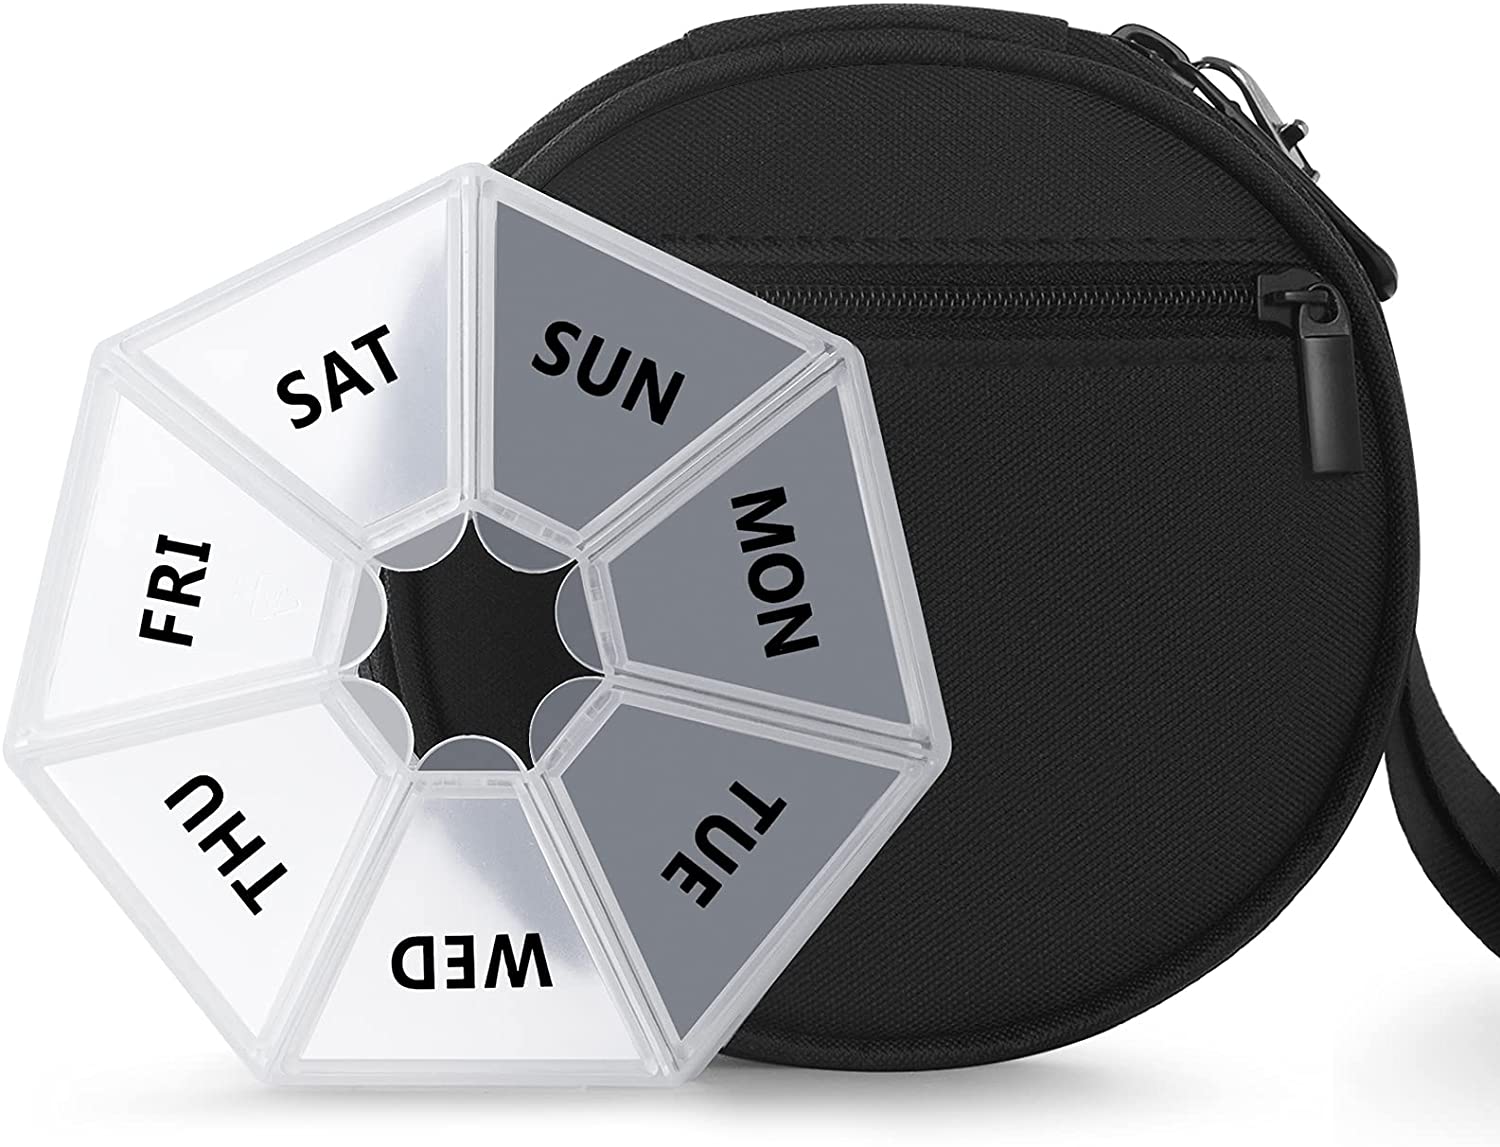 Tragbare Premium-Reise-Pillendose mit Reißverschlusstasche